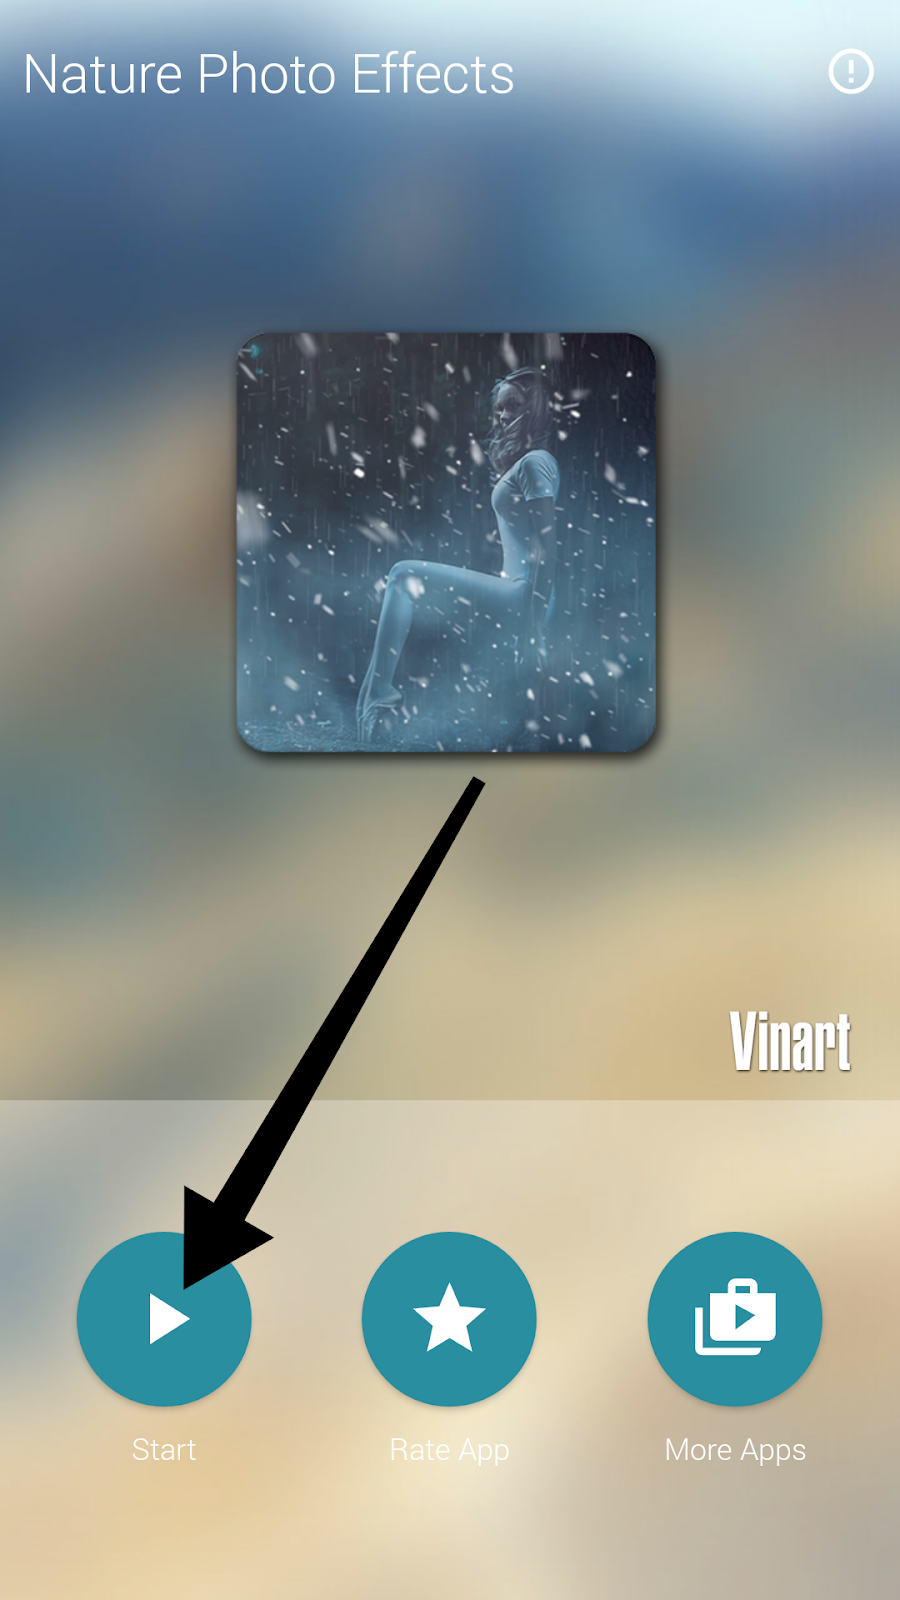 Cara membuat efek hujan pada foto di hp android - Info Android